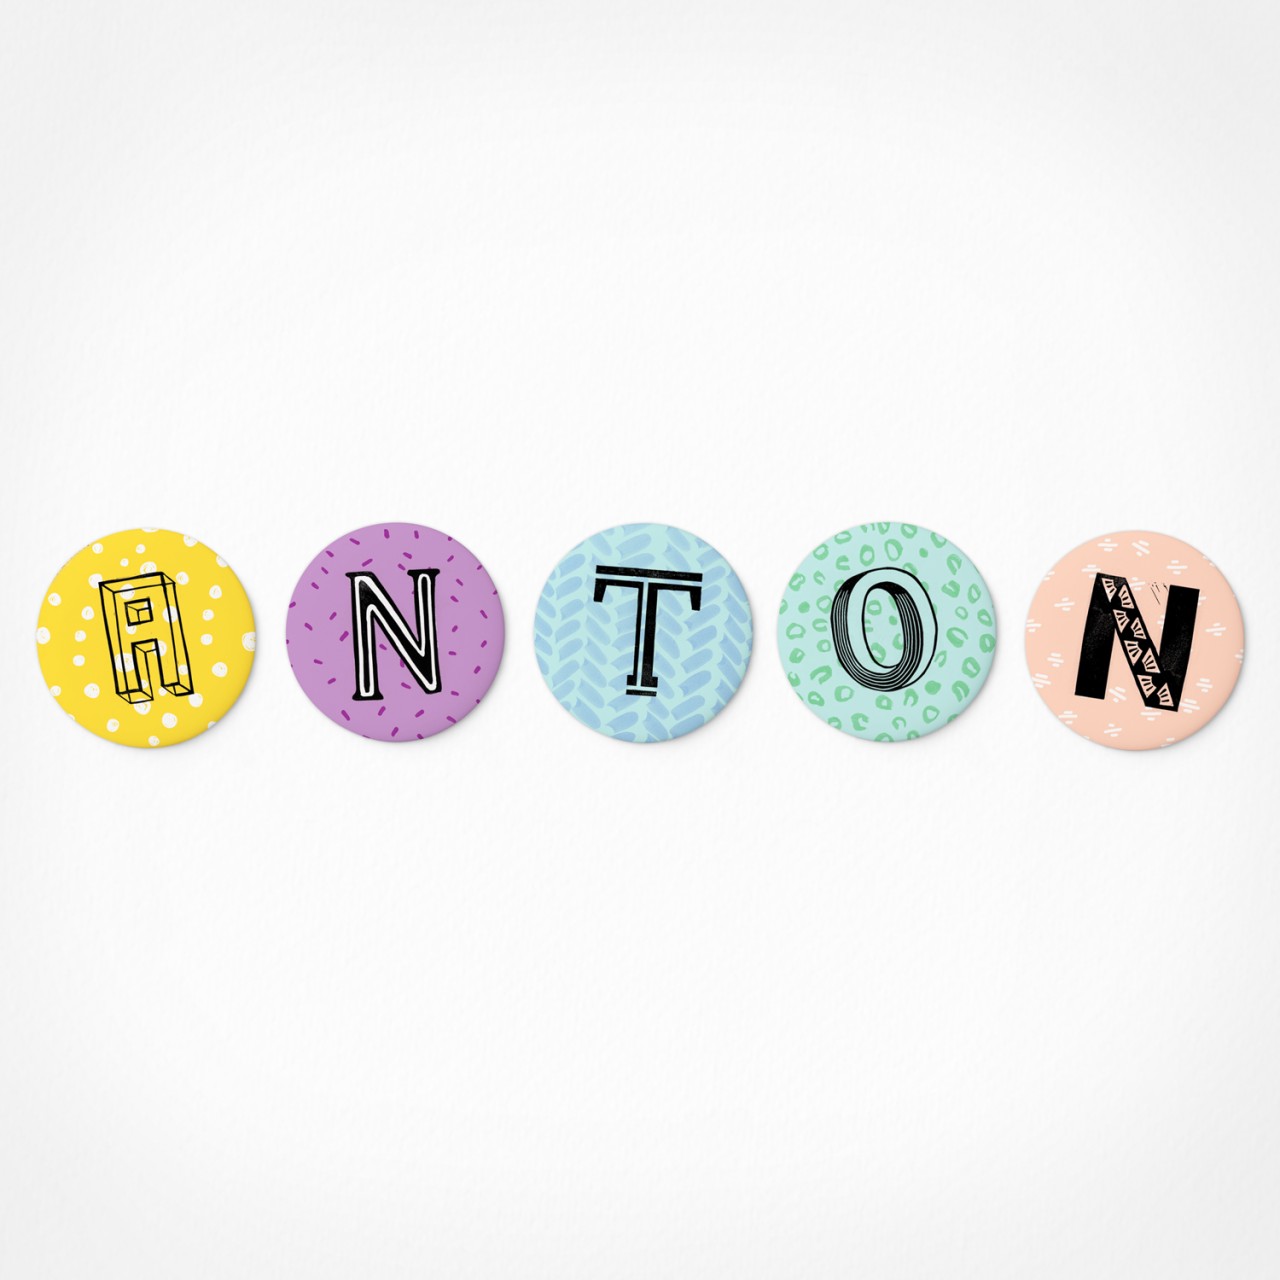 Anton | Magnetbuchstaben Set | 5 Magnete